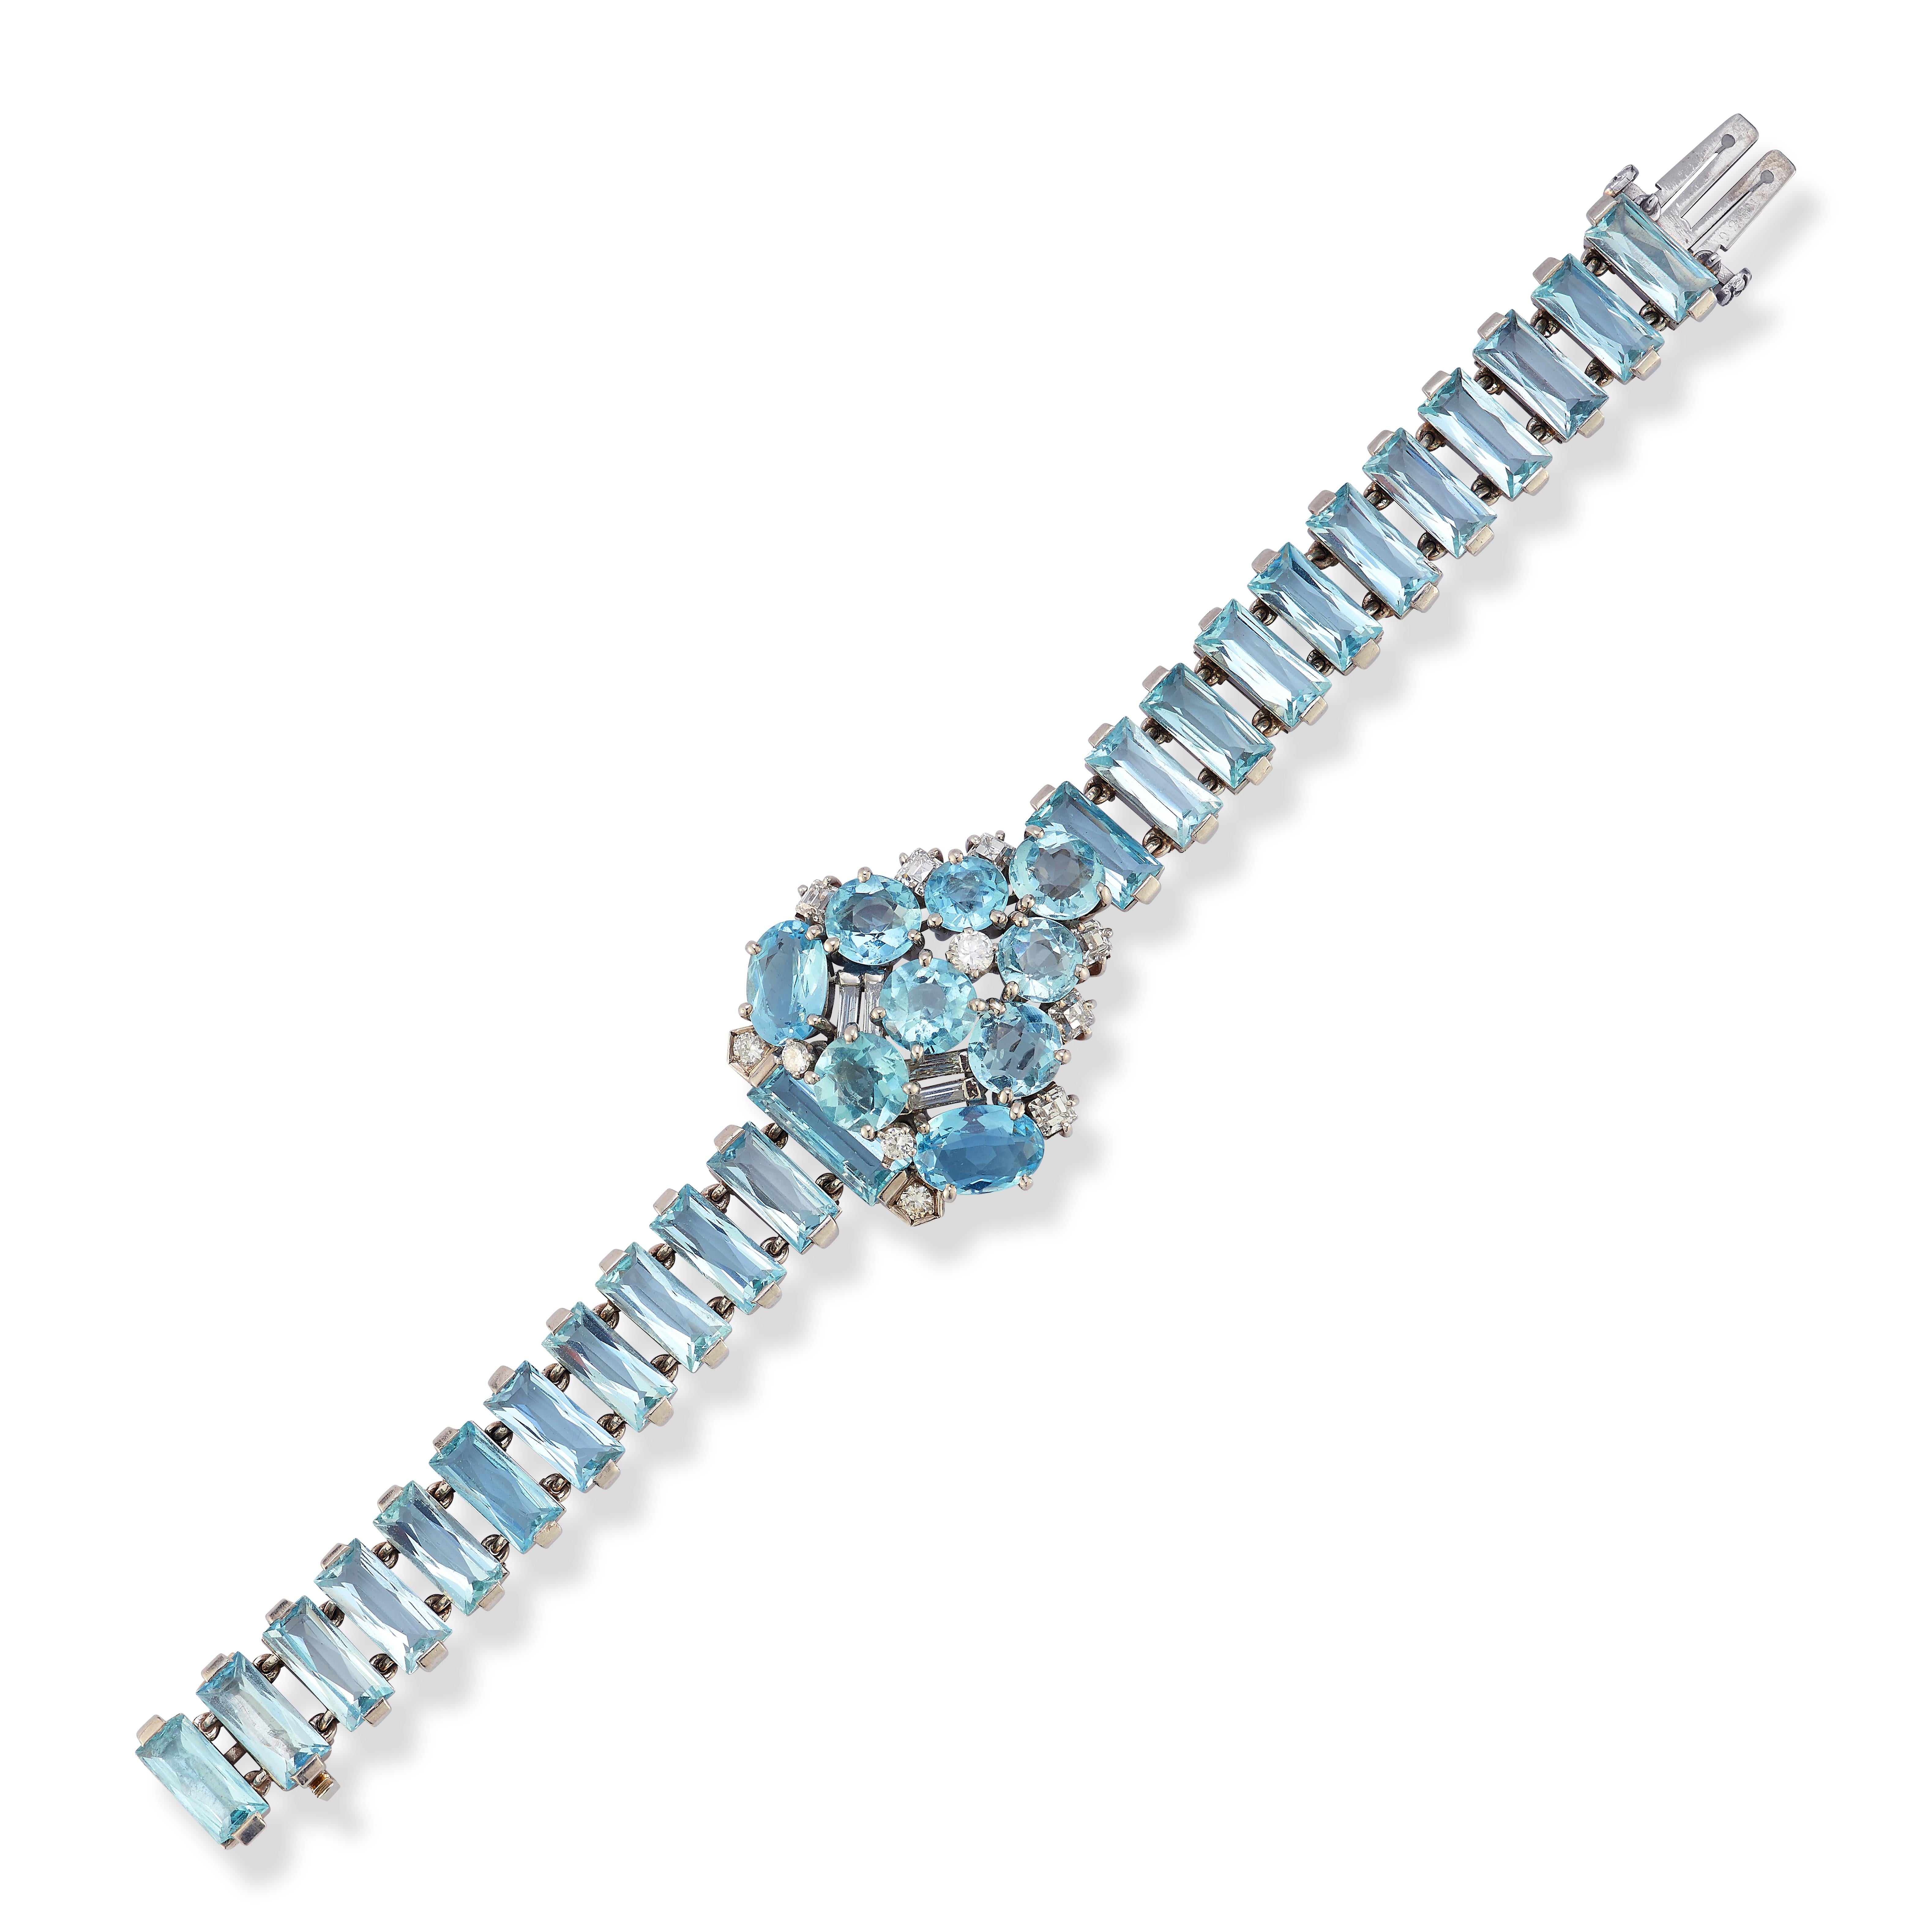 Bracelet d'aigue-marine et de diamants de Cartier. Vers 1939

Un bracelet avec un panneau central en forme de bouclier comprenant une aigue-marine rectangulaire, deux ovales et sept rondes, ainsi que six aigue-marines carrées taillées en escalier et